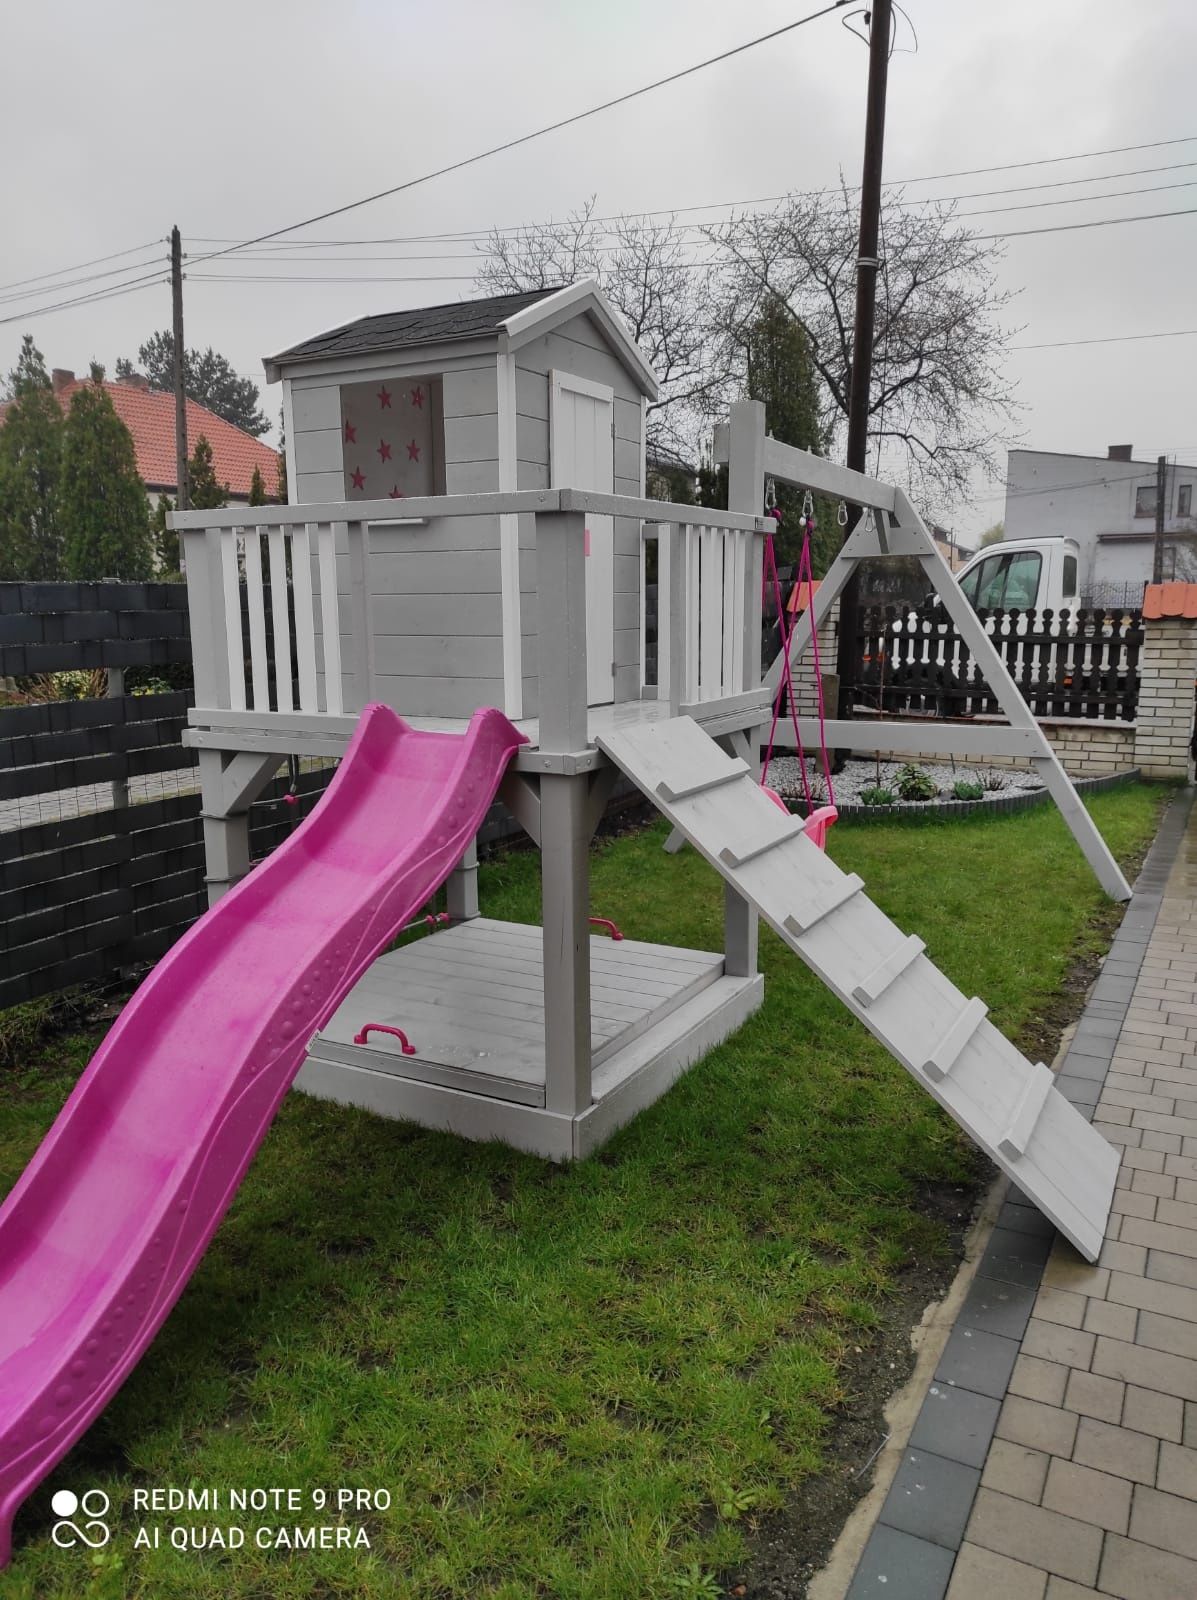 Drewniany plac zabaw, domek dla dzieci model SCOOBY-DOO